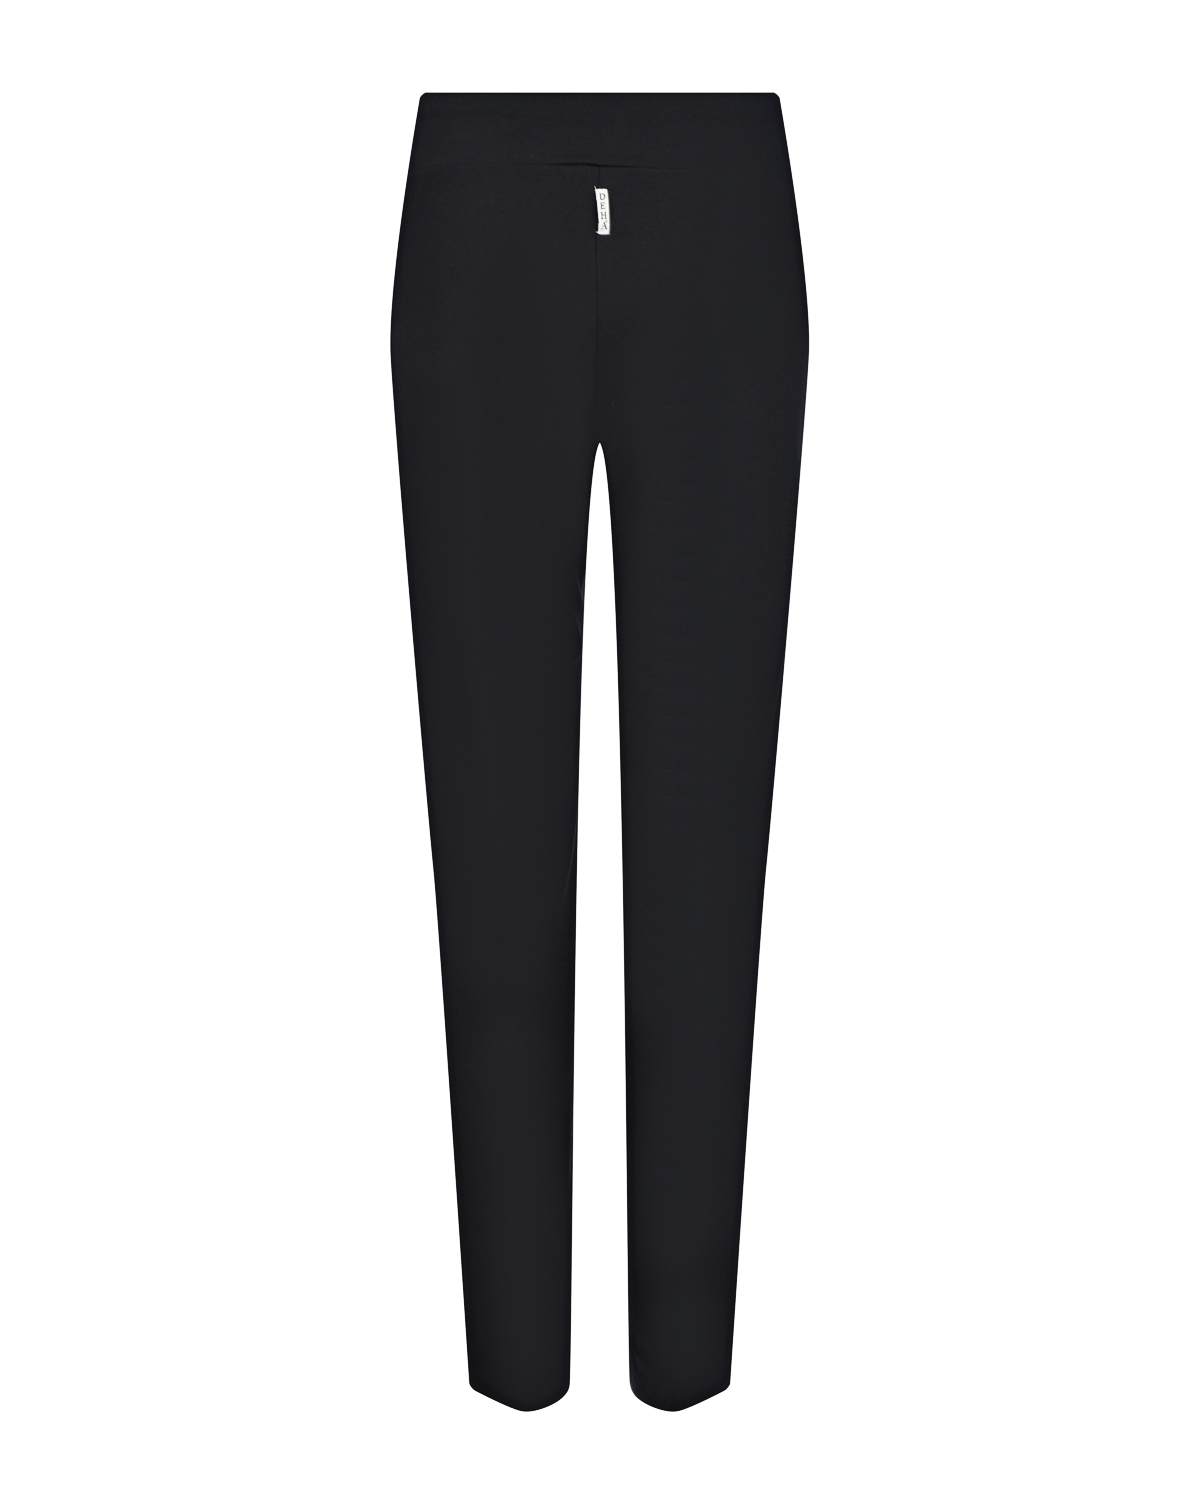 Трикотажные брюки с принтом пье-де-пуль Deha, размер 40, цвет черный - фото 5